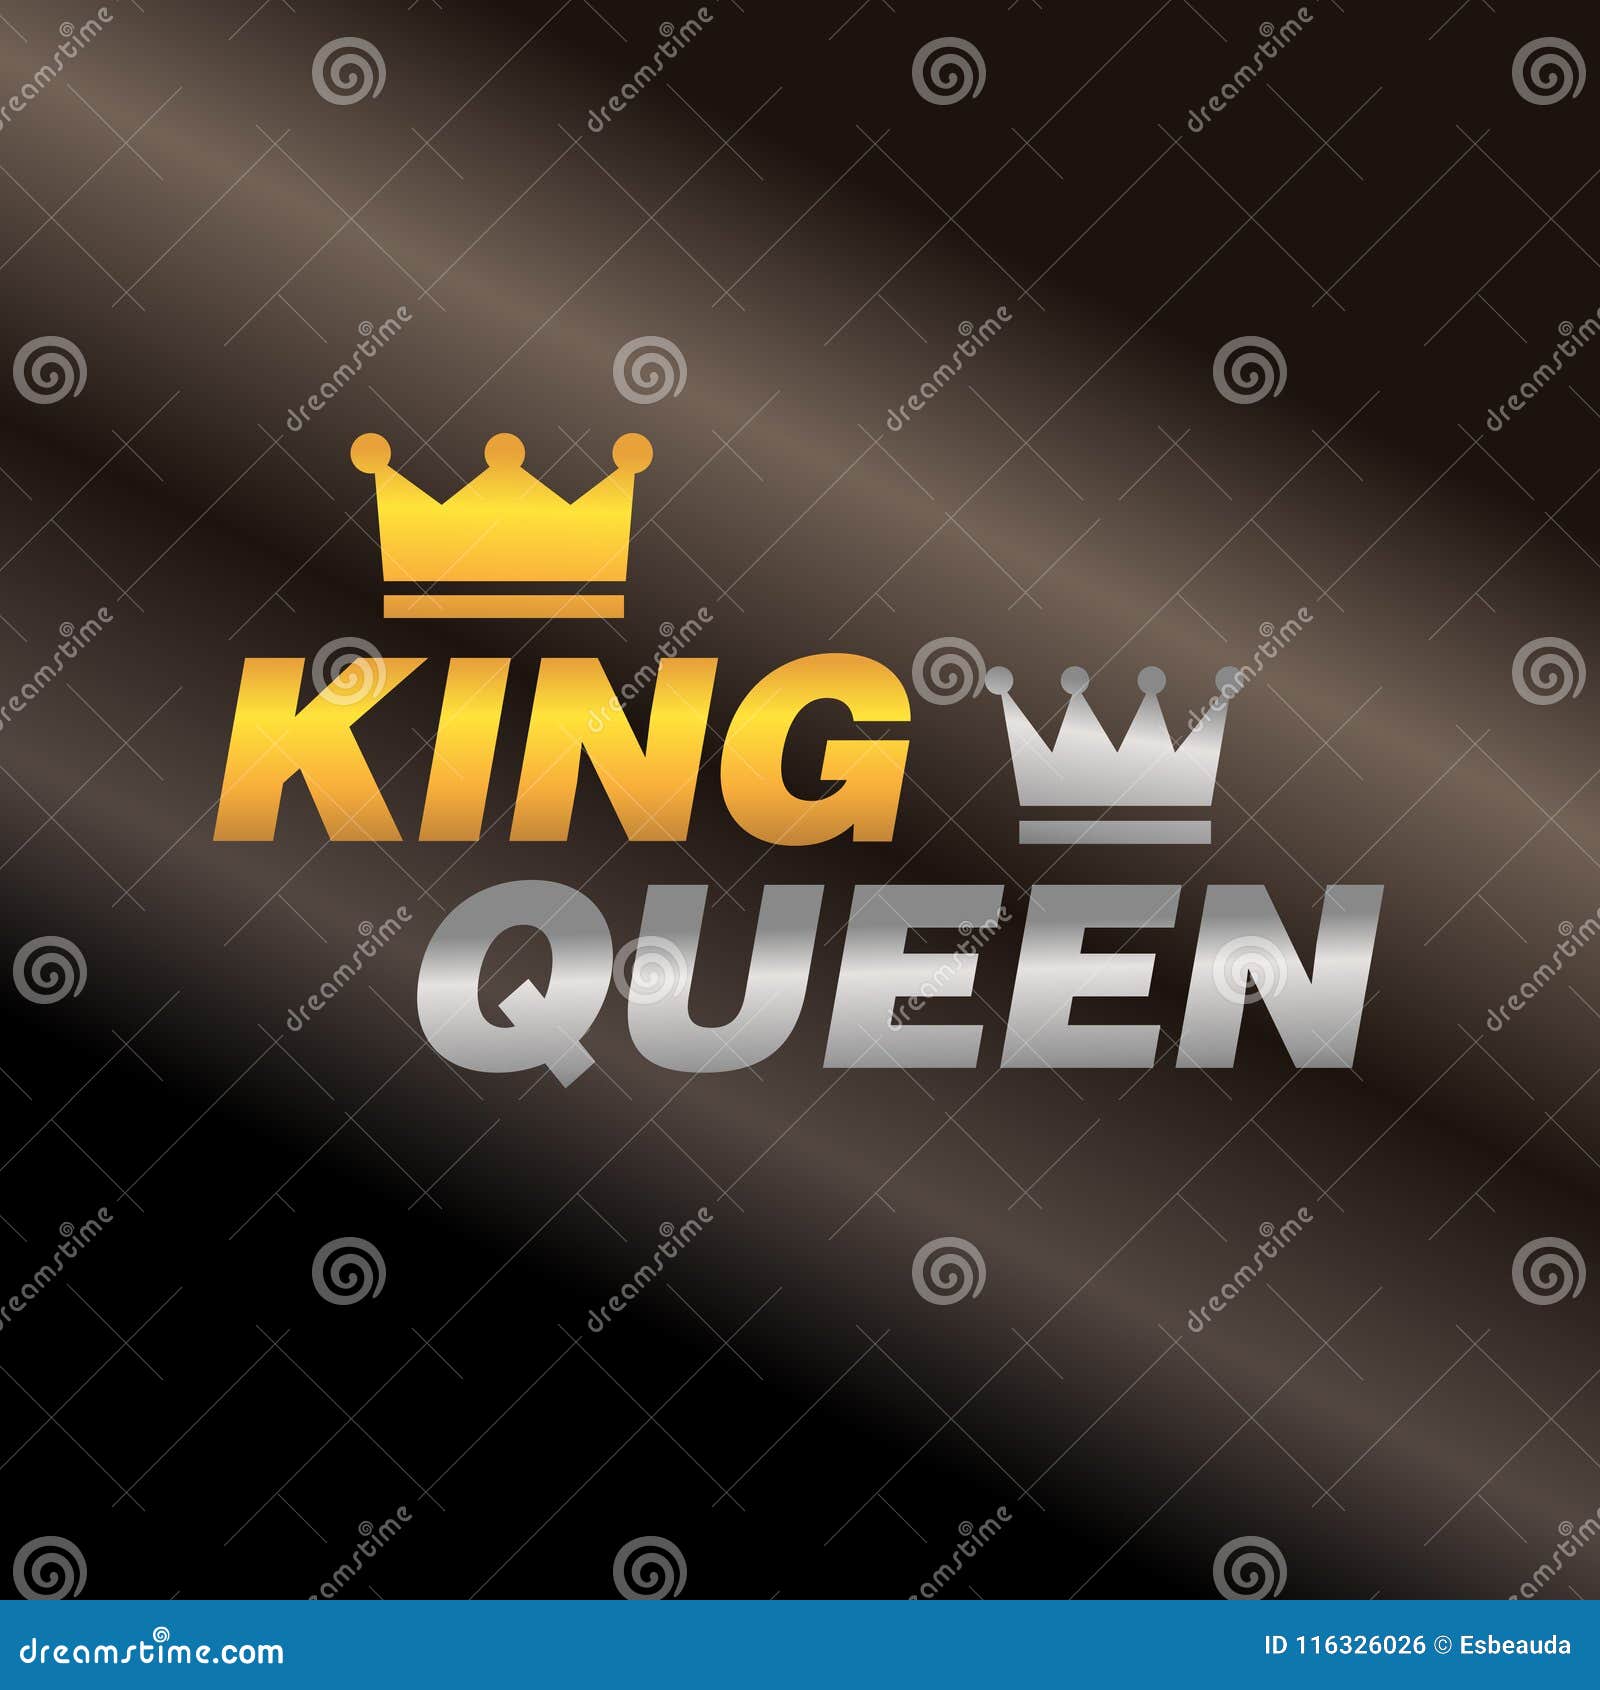 King n queen